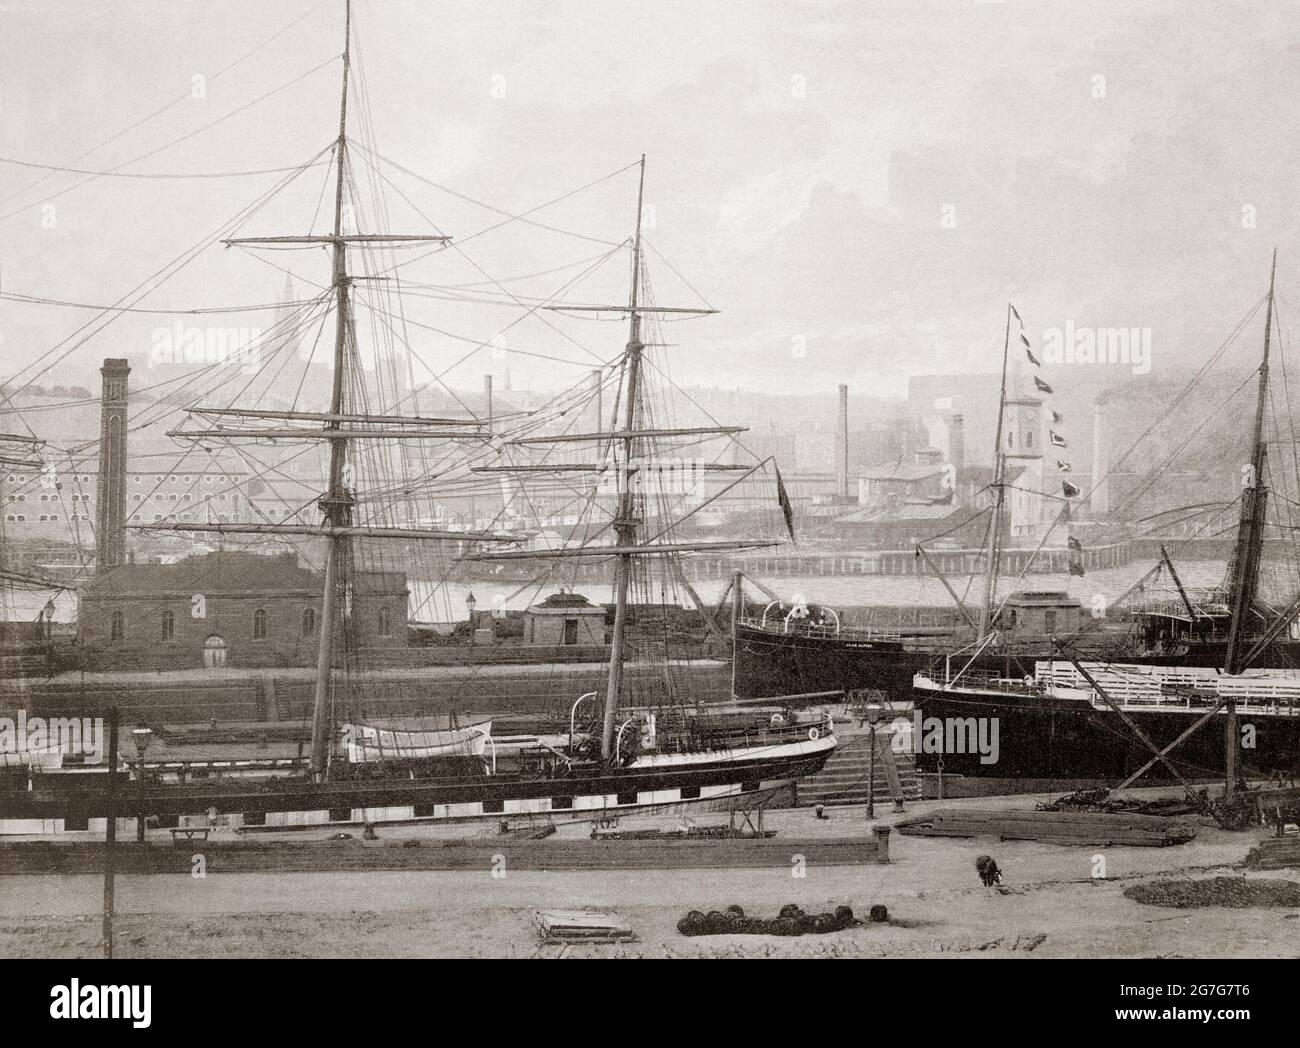 Eine Ansicht aus dem späten 19. Jahrhundert über die Schifffahrt bei Partick am Nordufer des Flusses Clyde, gegenüber von Govan, Glasgow, Schottland. Die rasche Expansion der Industrie von Partick basierte auf dem kontinuierlich vertieften Clyde aus den frühen 1820er Jahren durch dampfbetriebene Bagger. Dieser Ausbaggerungsprozess bot bald Tiefseeschifffahrtswege bis zum Hafen an der Broomielaw im Zentrum von Glasgow. In den 1840er Jahren war die Clyde tief und breit genug in Govan und Partick, um Werften auf beiden Seiten des Flusses zu schaffen, die große Seeschiffe bauen konnten Stockfoto